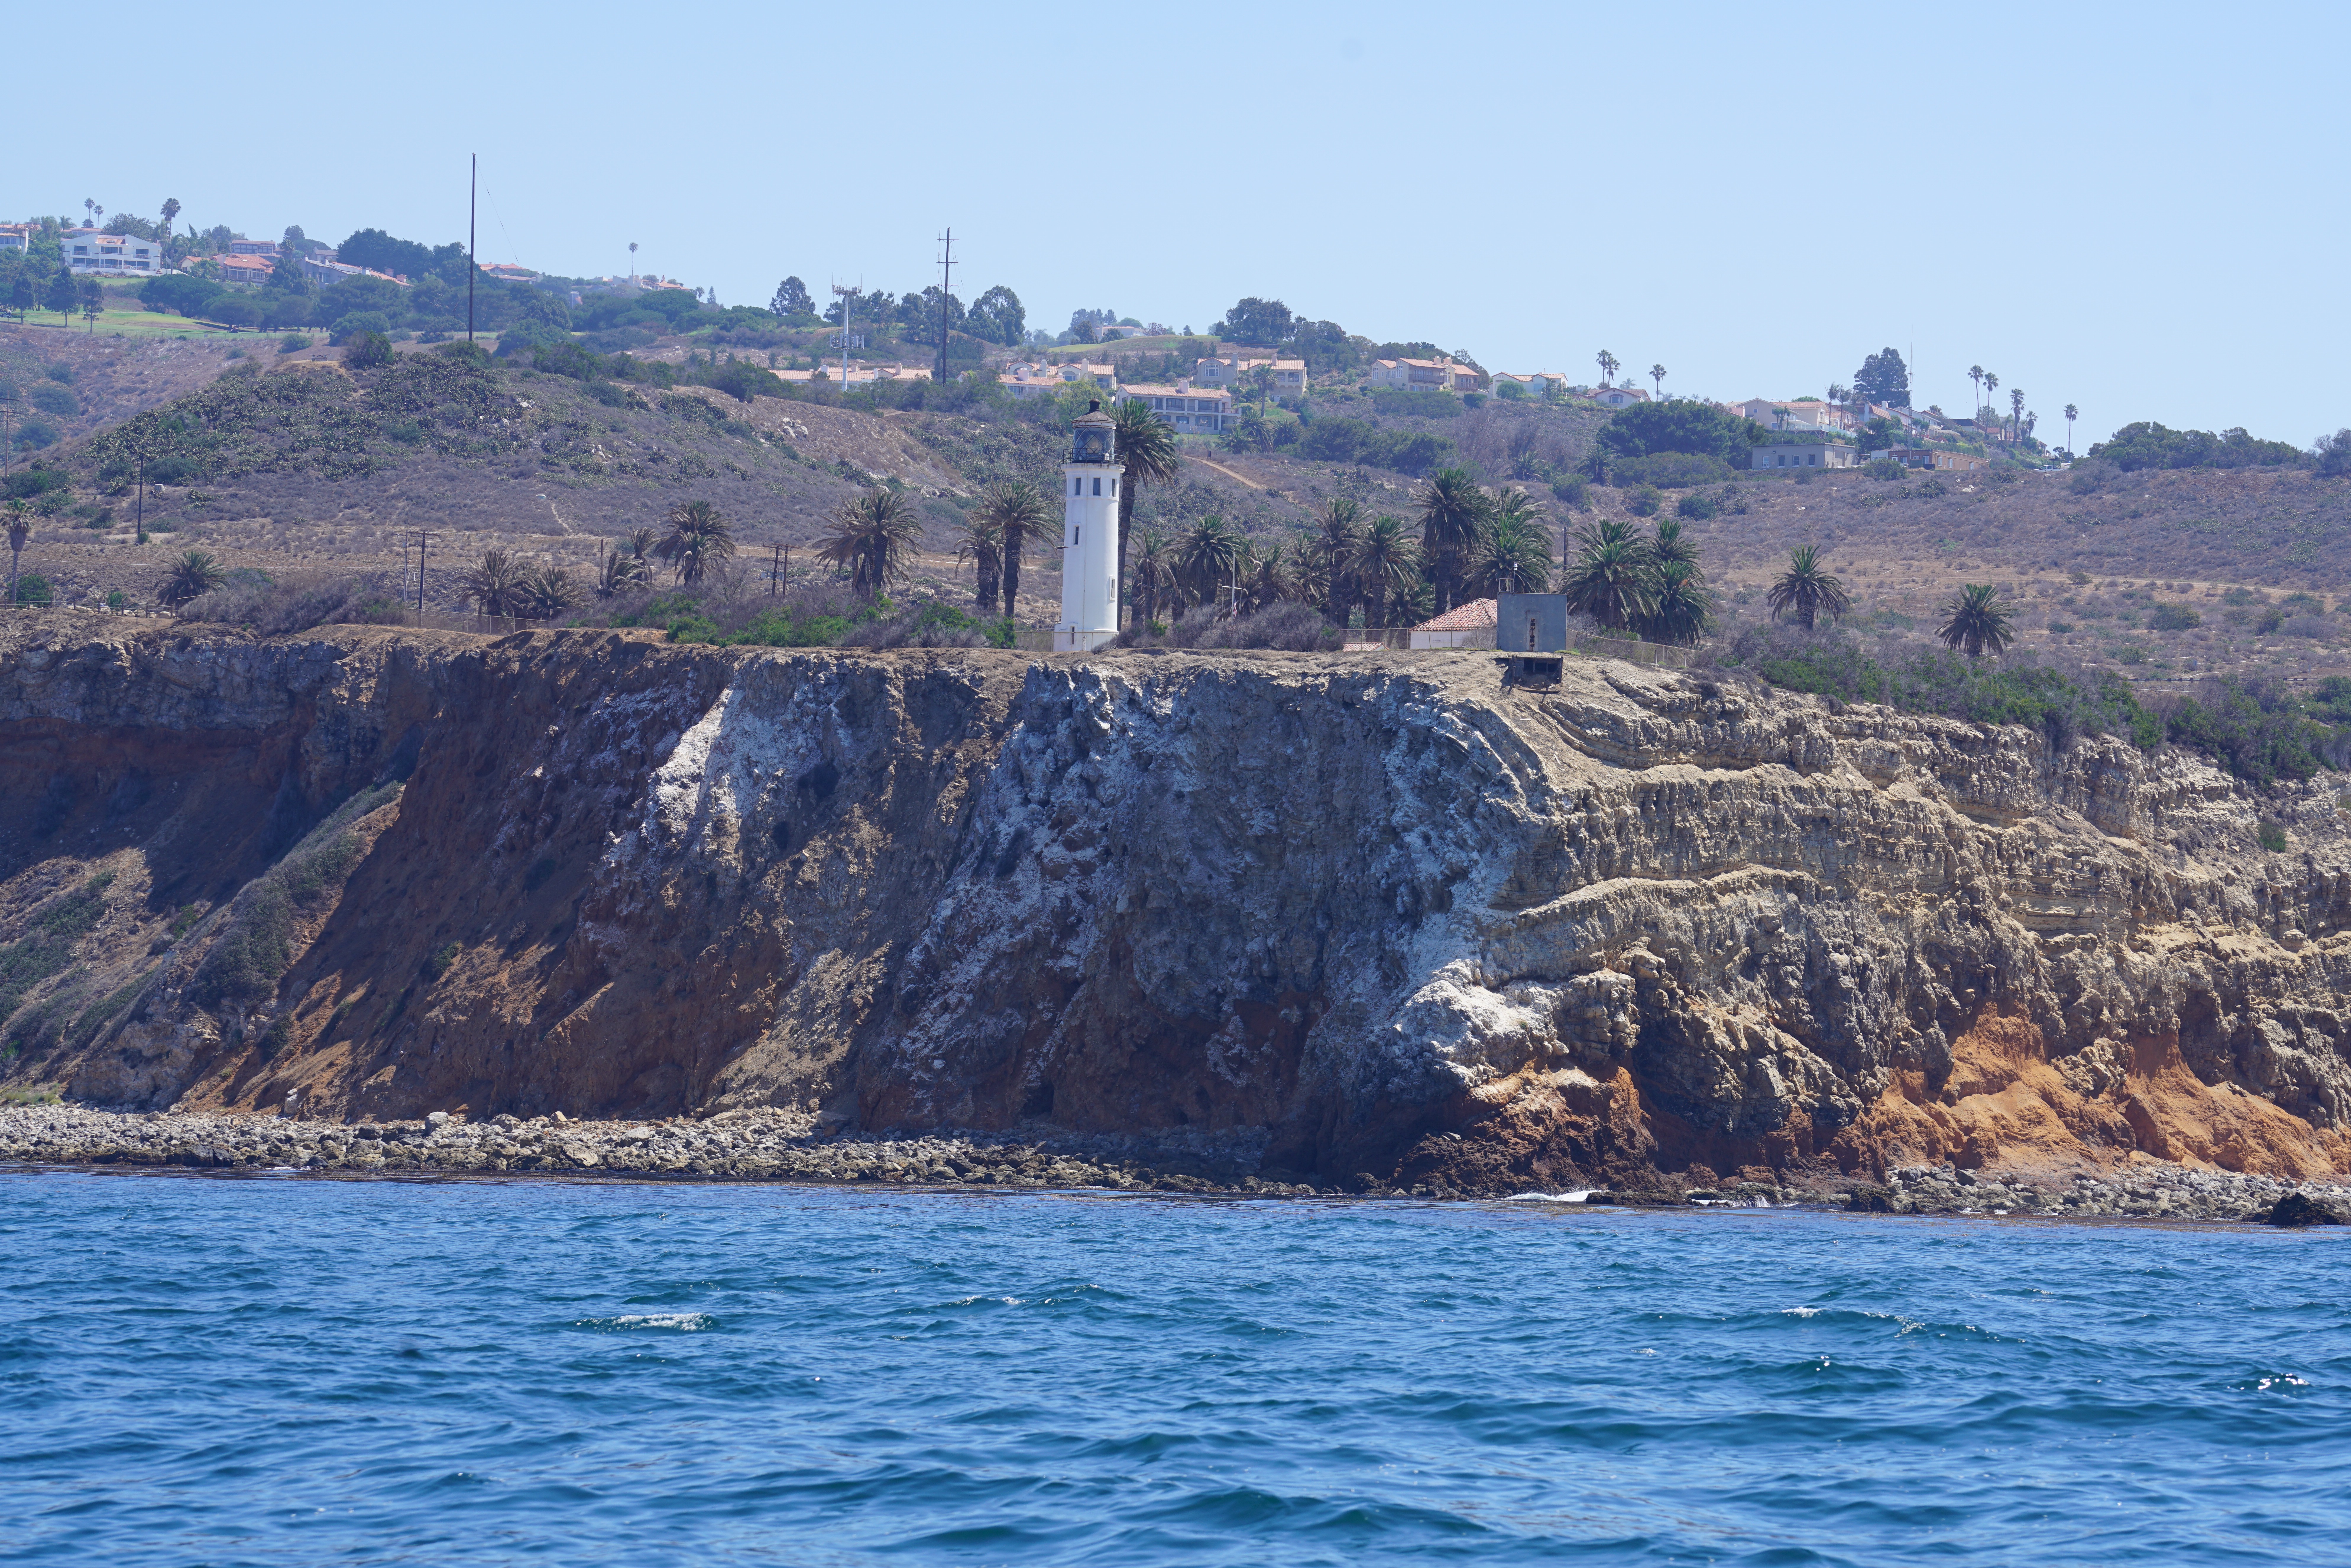 Pt. Vicente Lighthouse